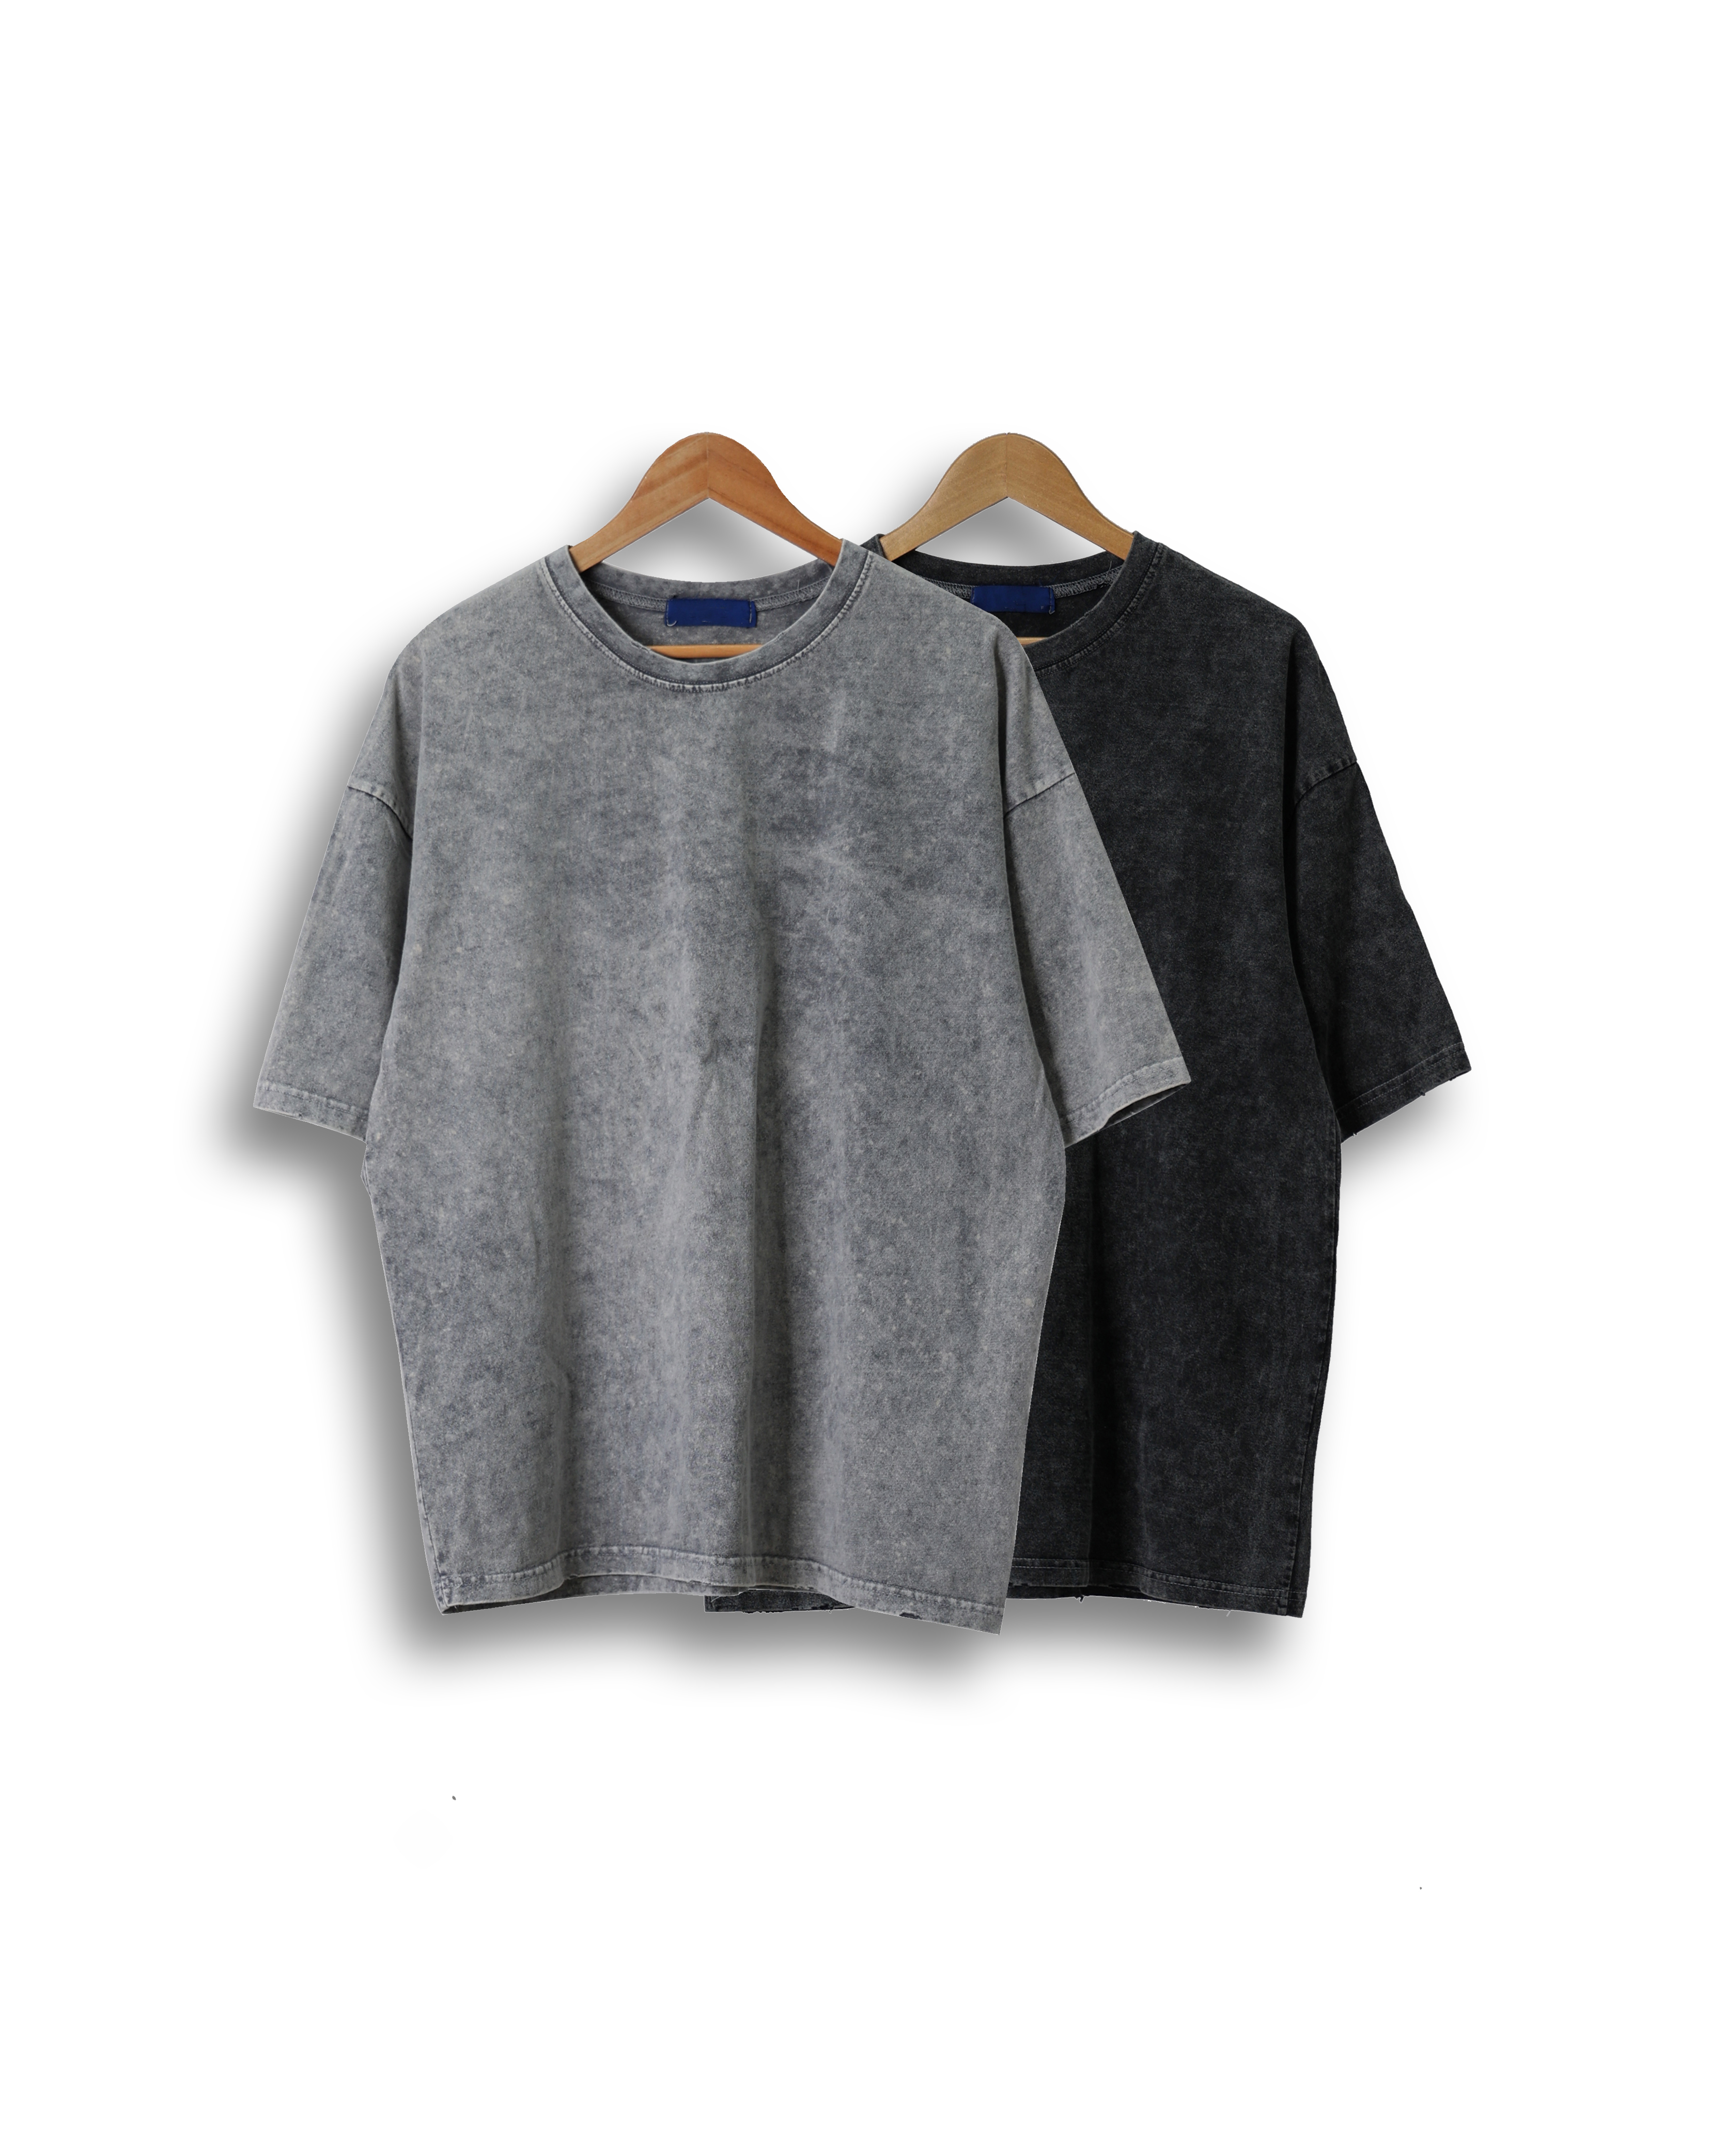 LAN Snow Washed Vintage T Shirts (Black/Gray)